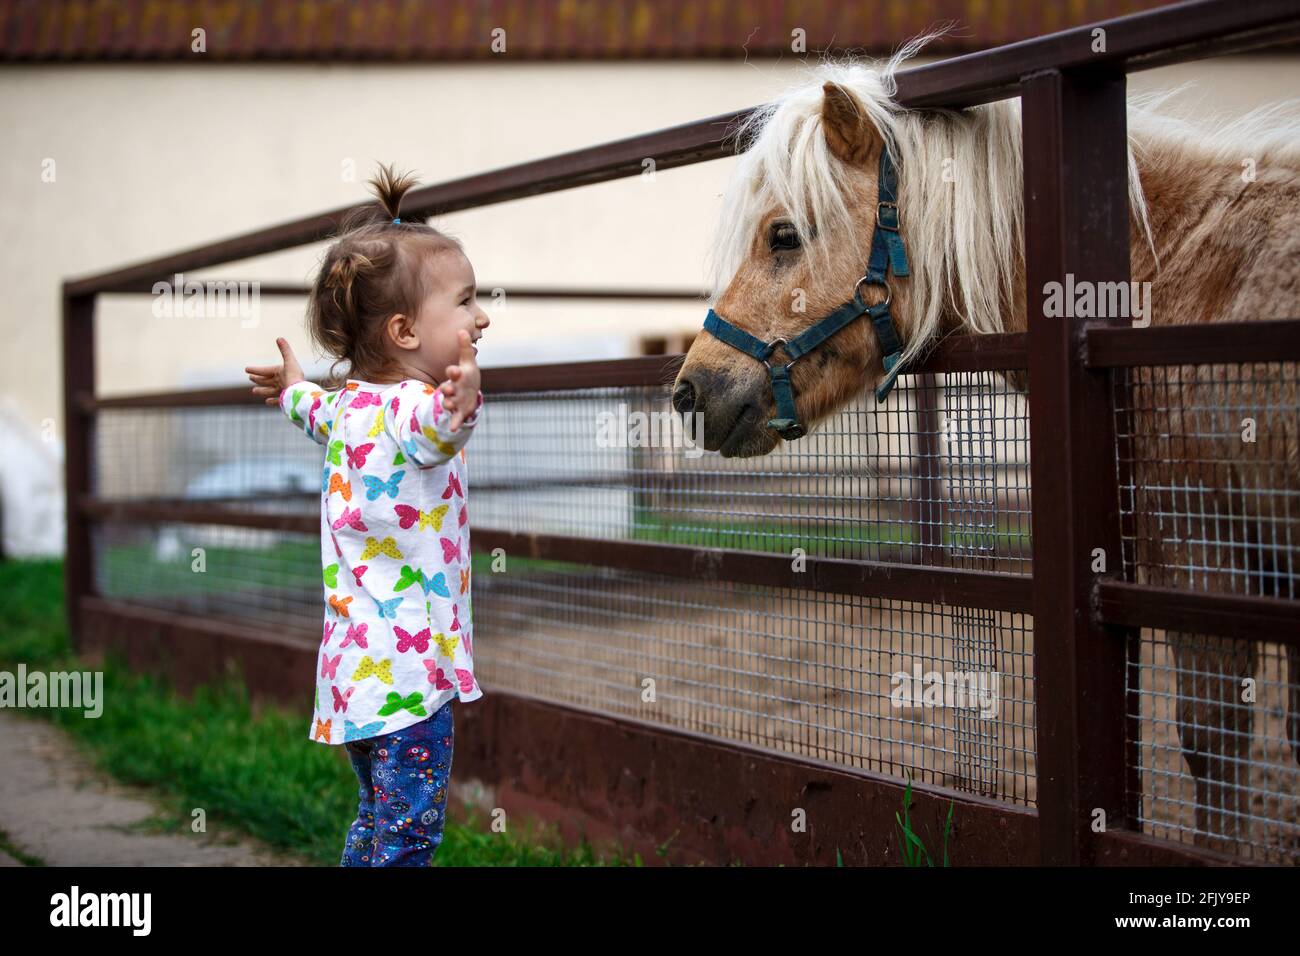 Ein kleines Mädchen von kaukasischem Aussehen genießt ein Pony Pferd in einem Stall auf einem Bauernhof. Glückliches Kind, Kommunikation mit Tieren, Zoo, Emotionen. Platz für tex Stockfoto